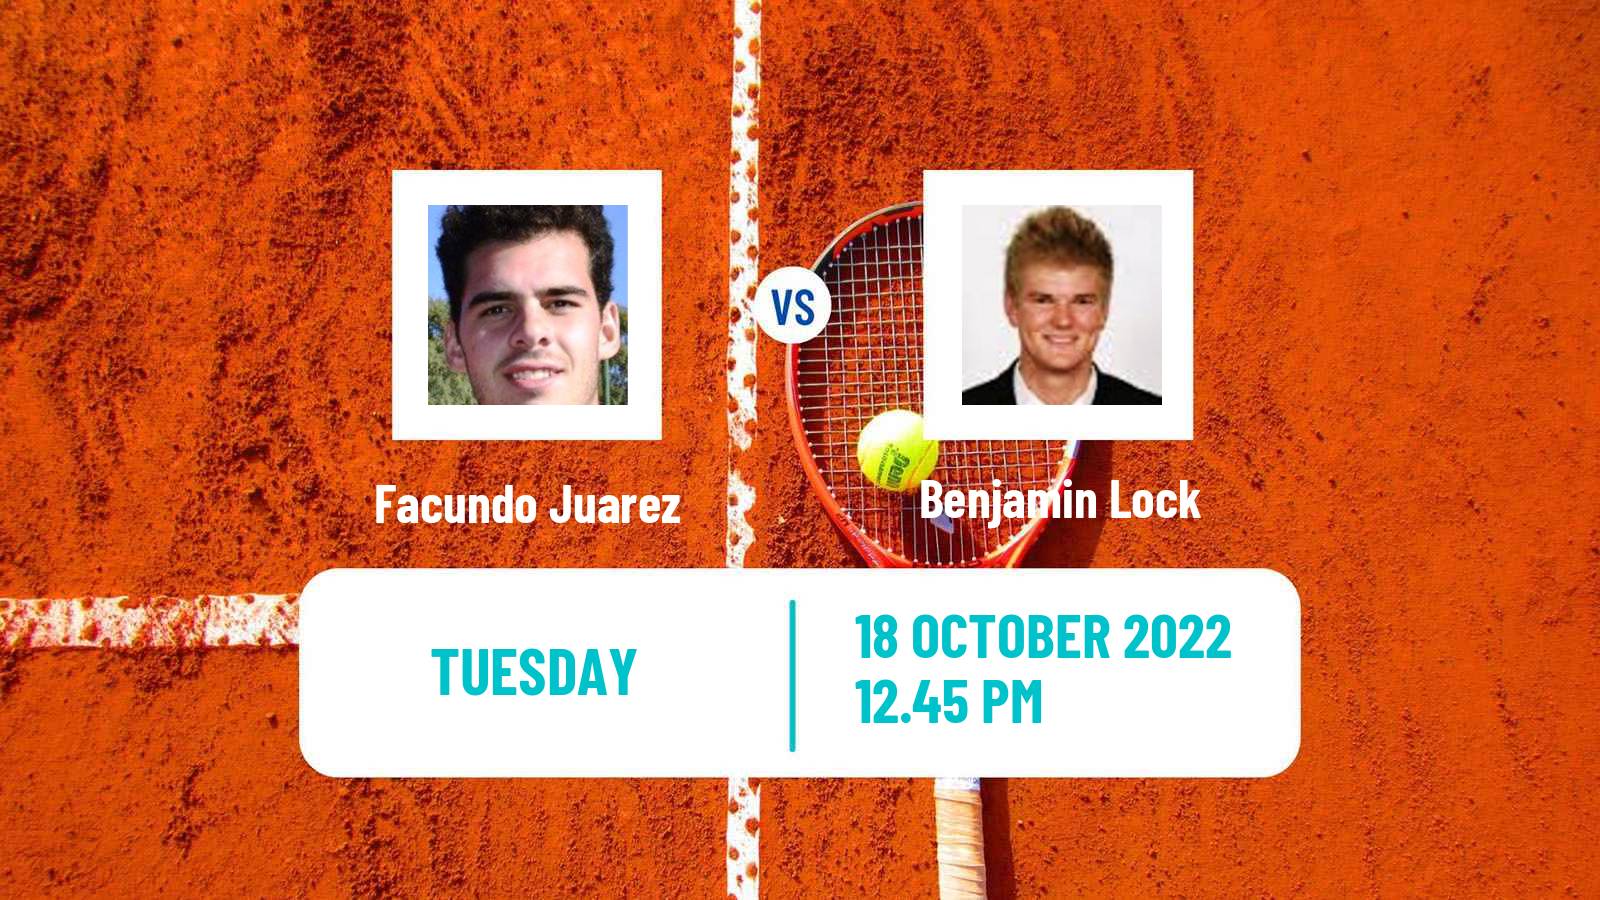 Tennis ATP Challenger Facundo Juarez - Benjamin Lock